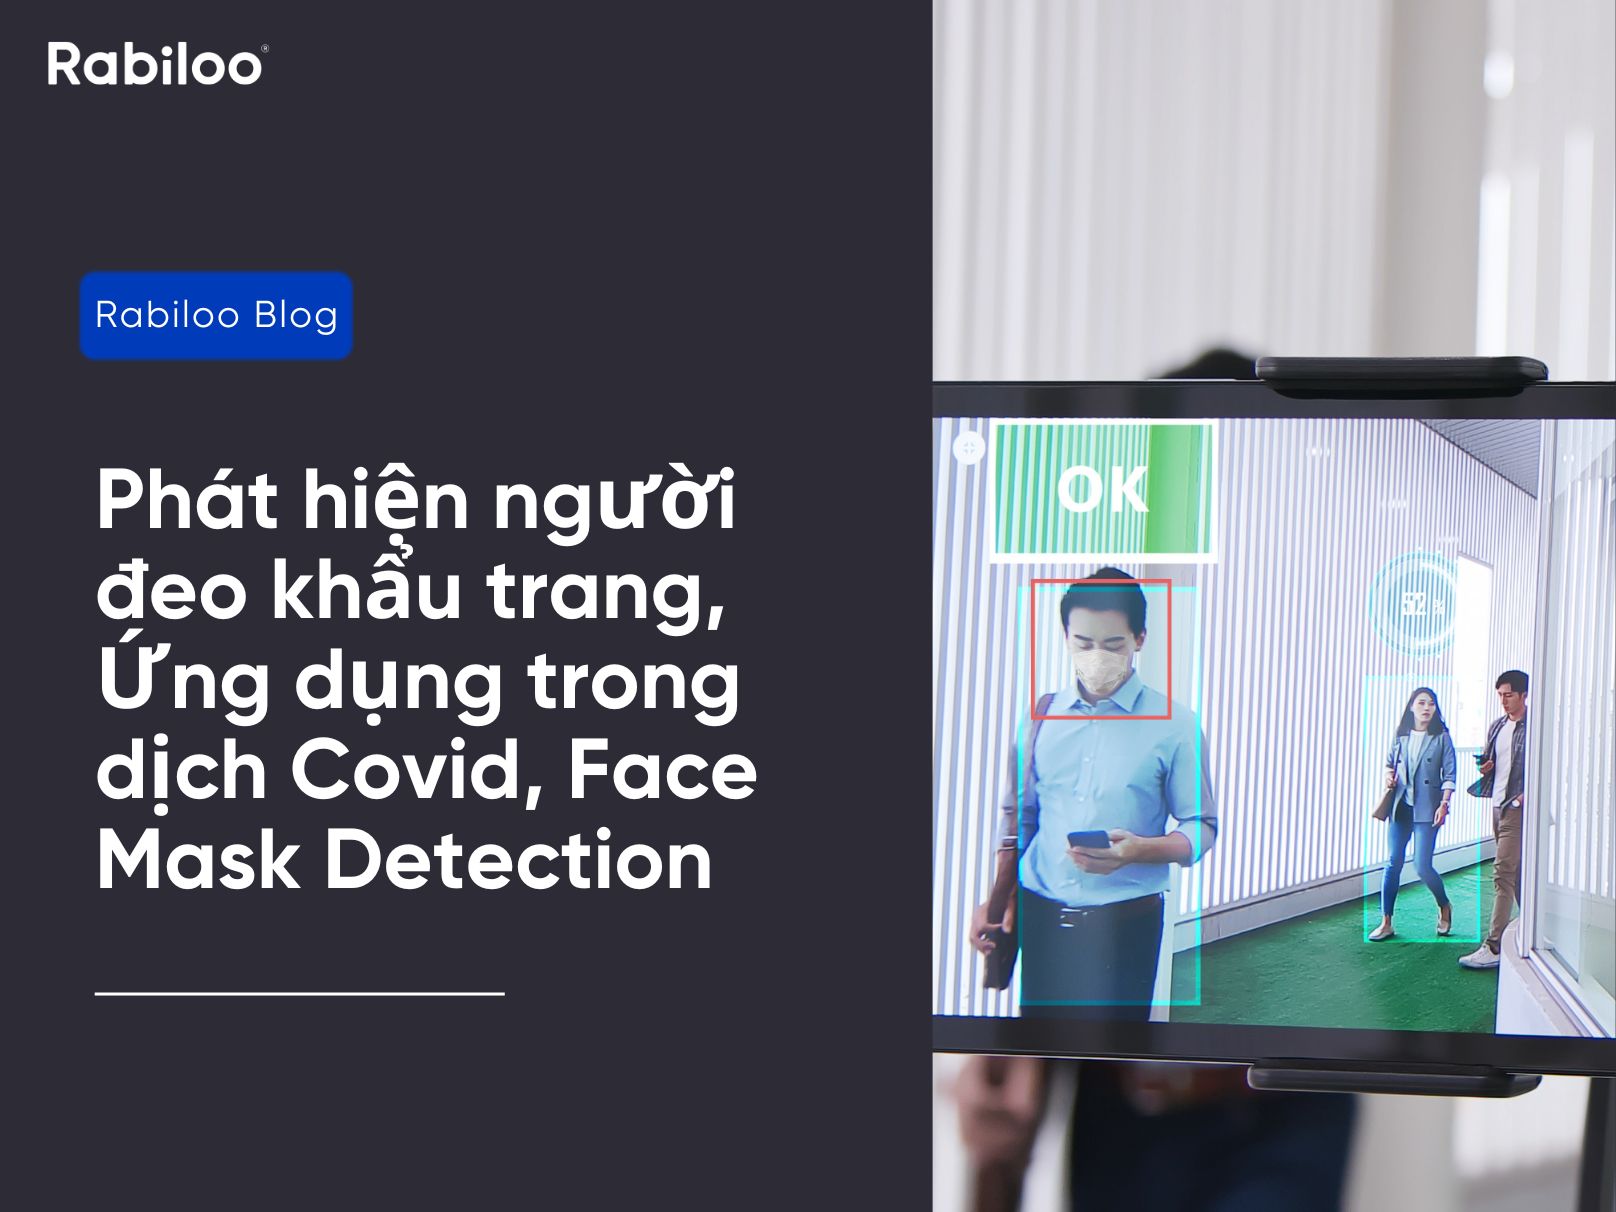 Phát hiện người đeo khẩu trang | Ứng dụng trong dịch Covid | Face Mask Detection